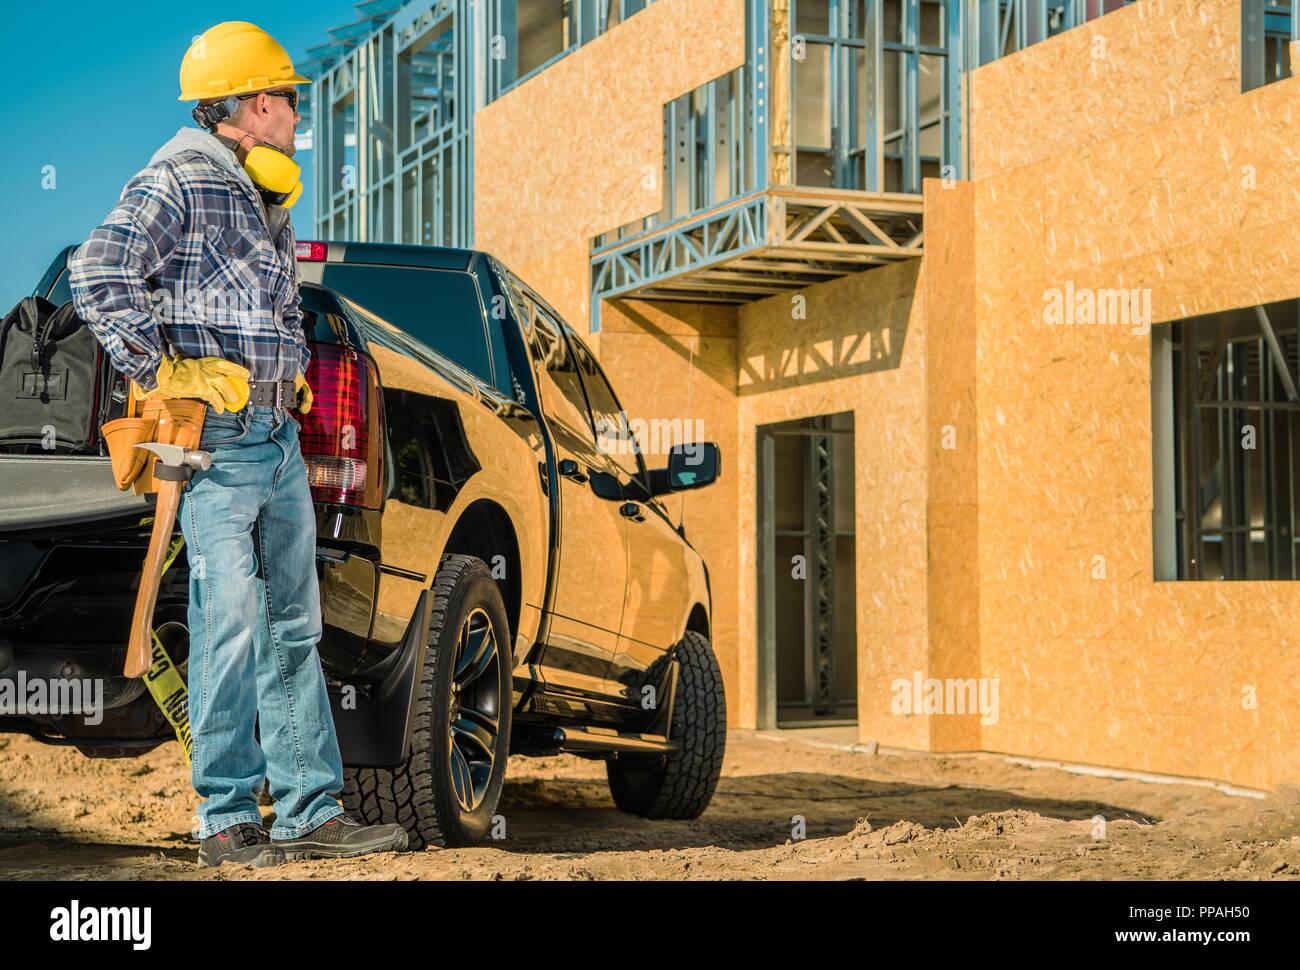 Wohn- Baustelle. Junge kaukasier Auftragnehmer Arbeiter in seinem 30s und seinem Pickup Truck vor der neu errichteten Gebäude. Metal Frame a Stockfoto